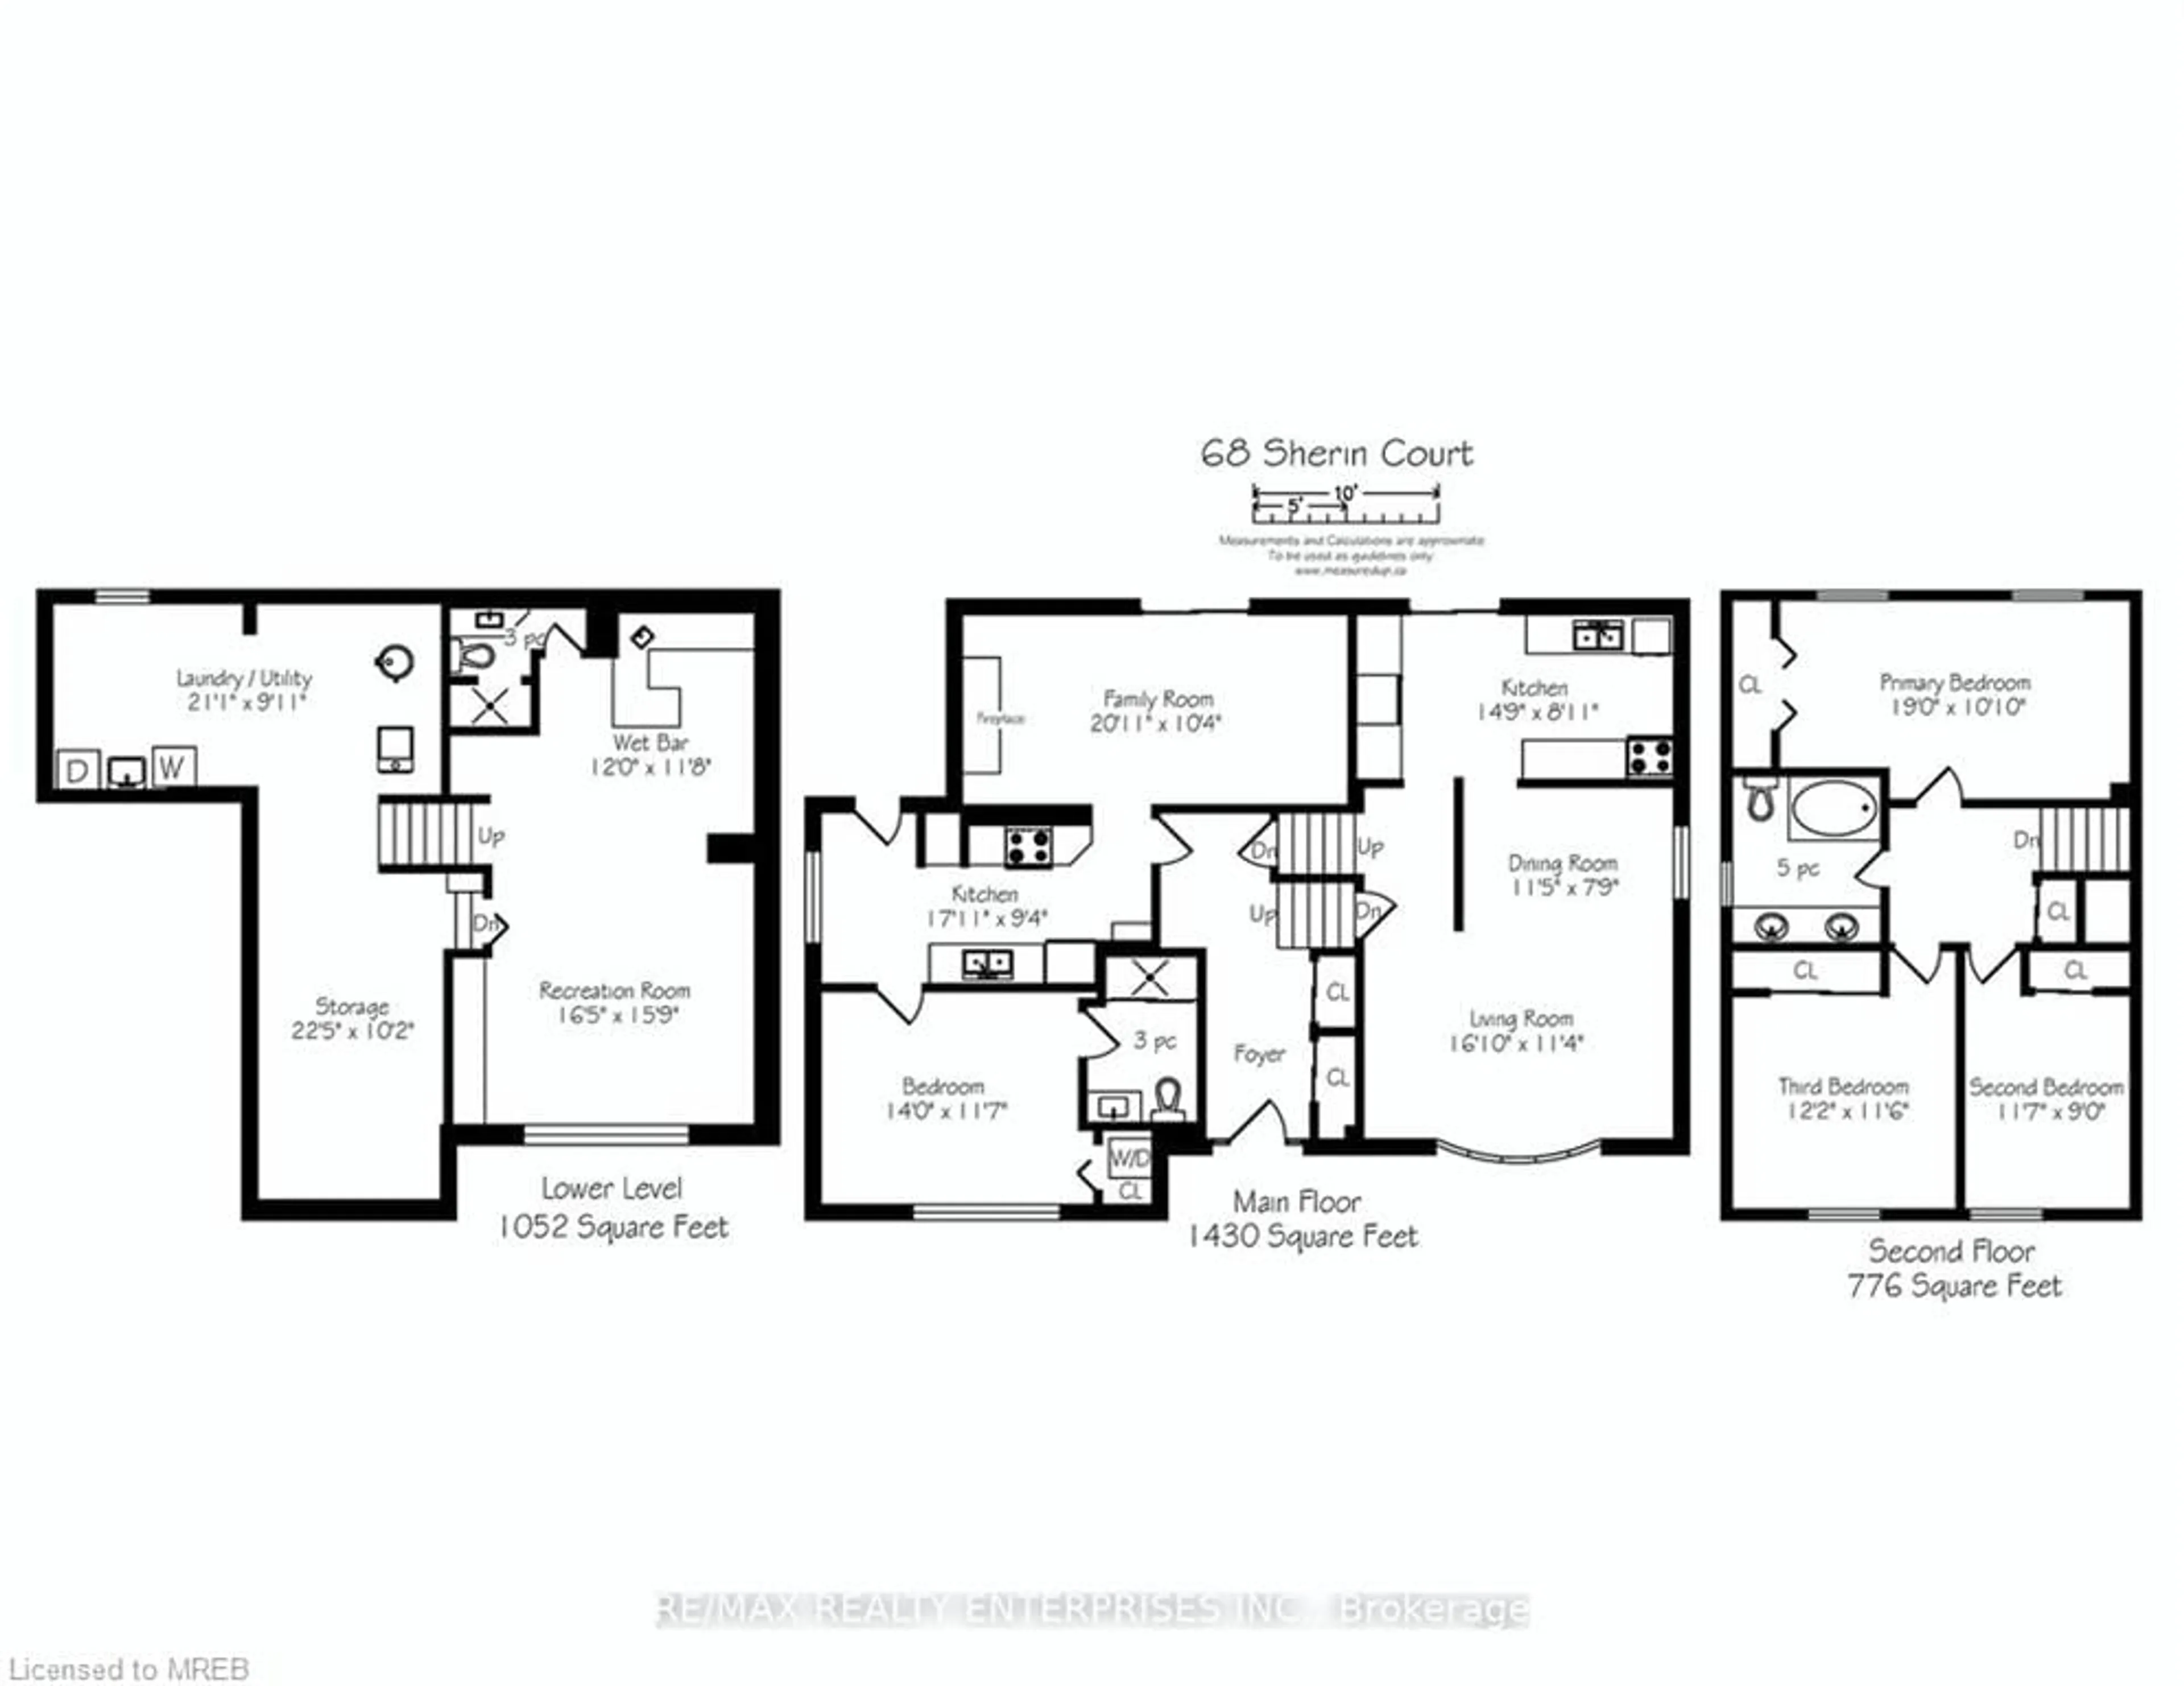 Floor plan for 68 Sherin Crt, Caledon Ontario L7E 3T5